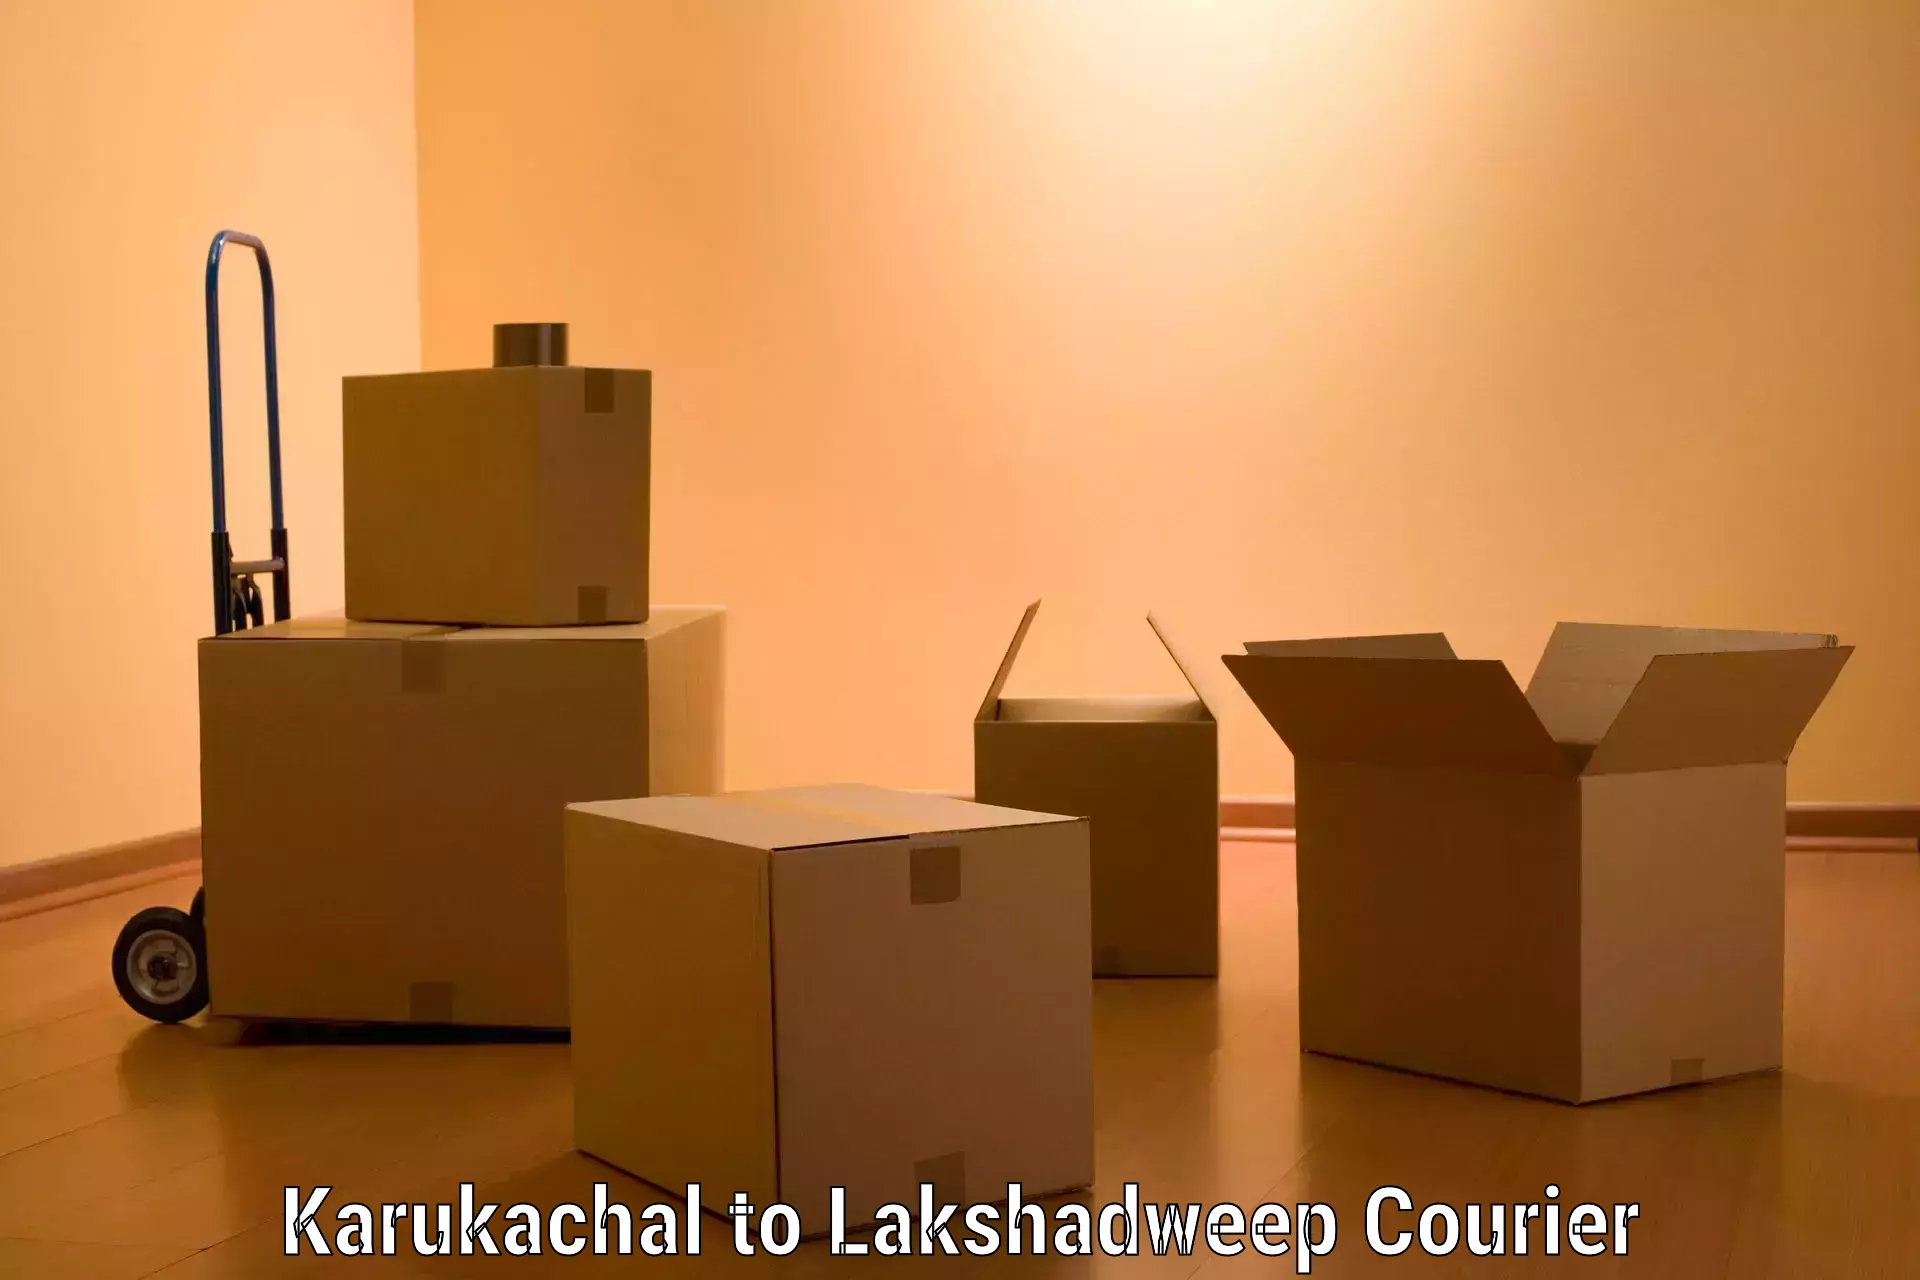 Quality furniture transport in Karukachal to Lakshadweep